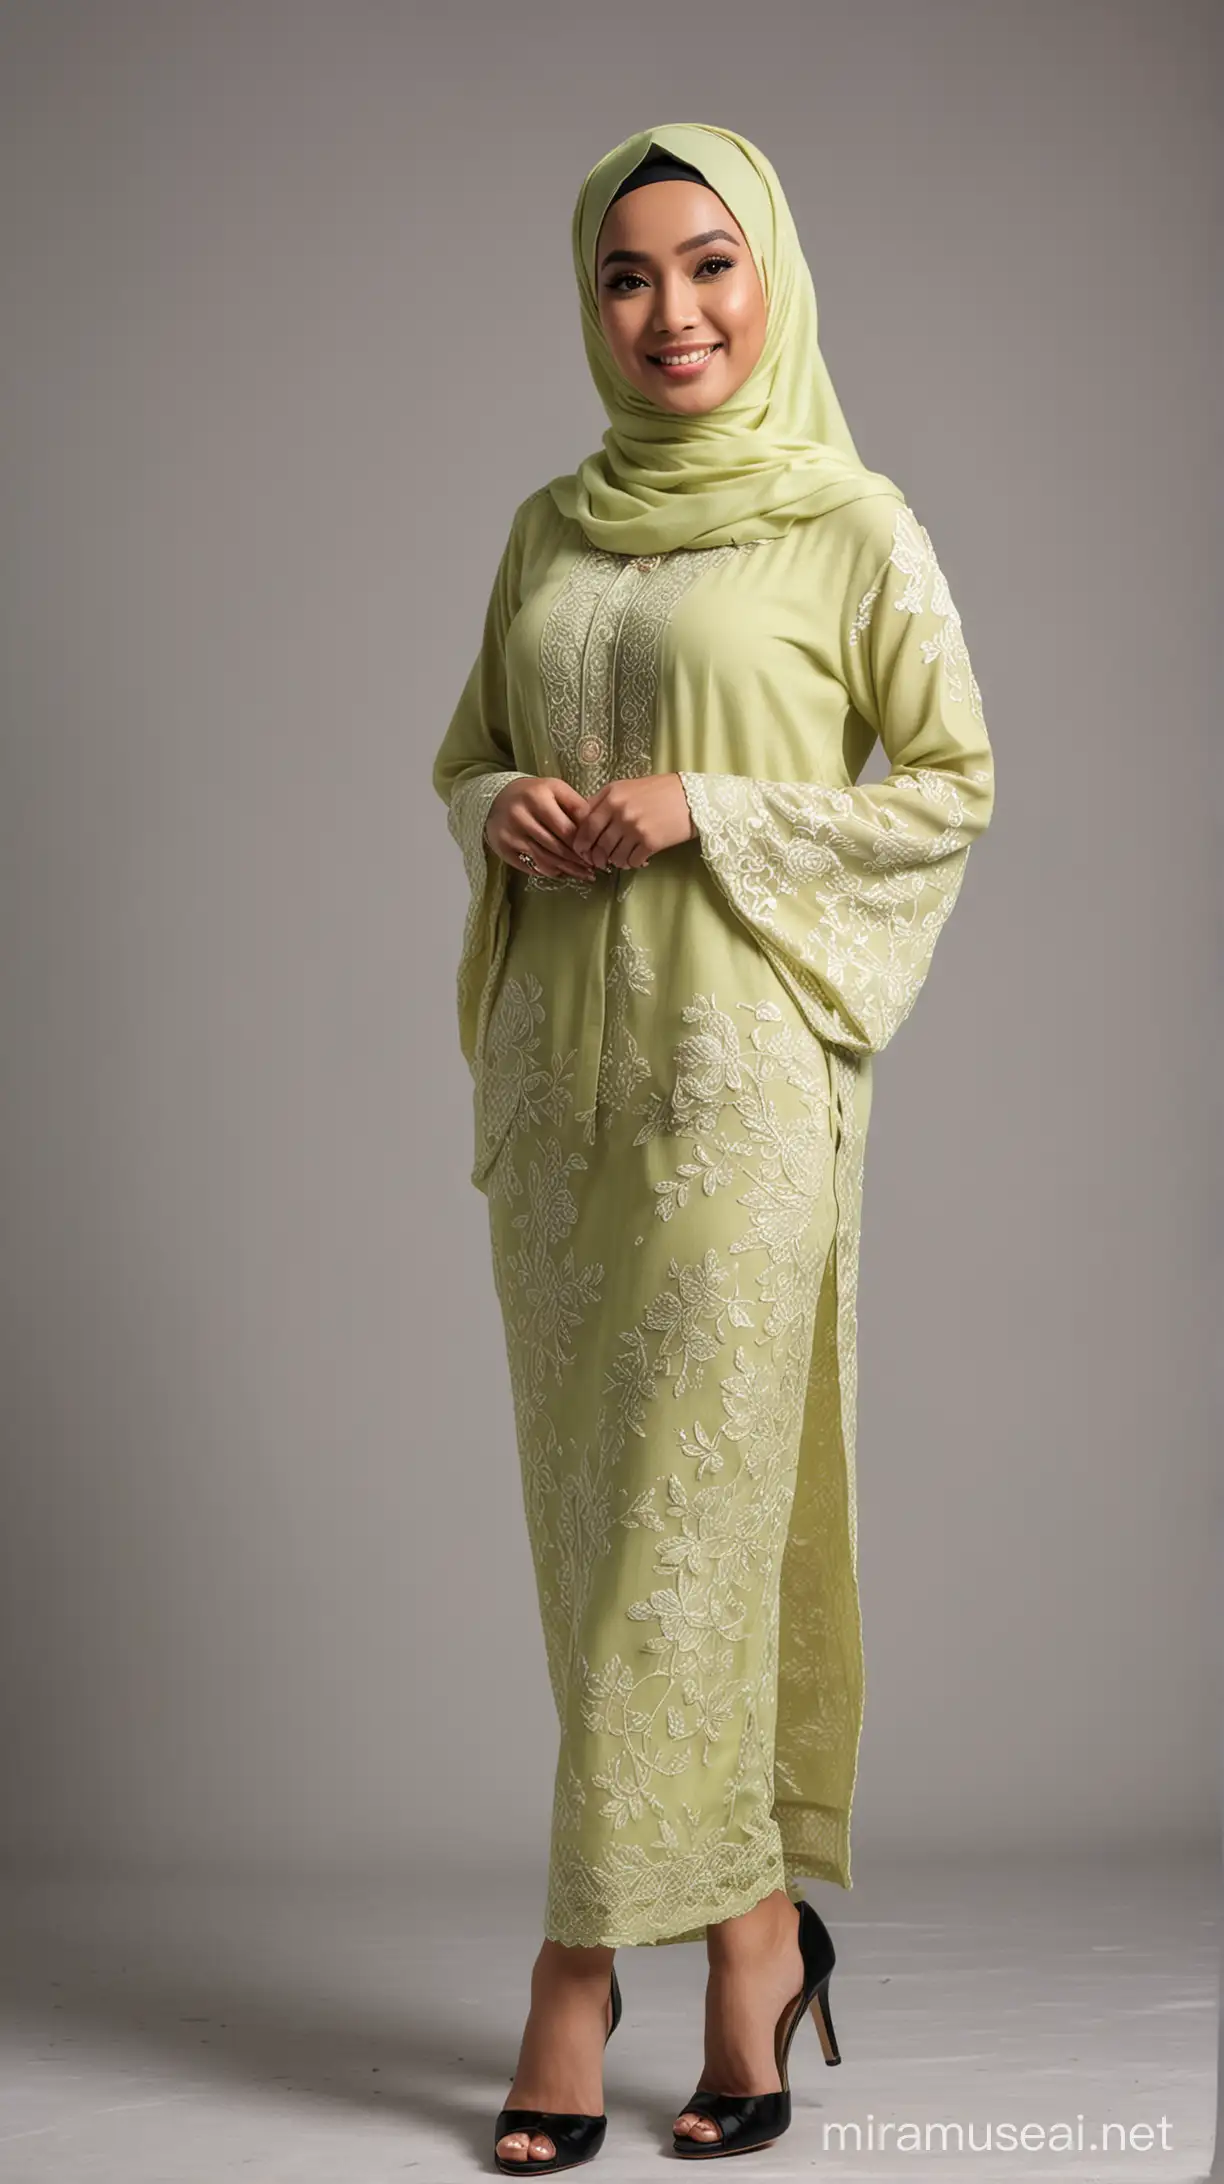 Elegant Malay Woman in PeachColored Hijab and Lime Loose Kebaya